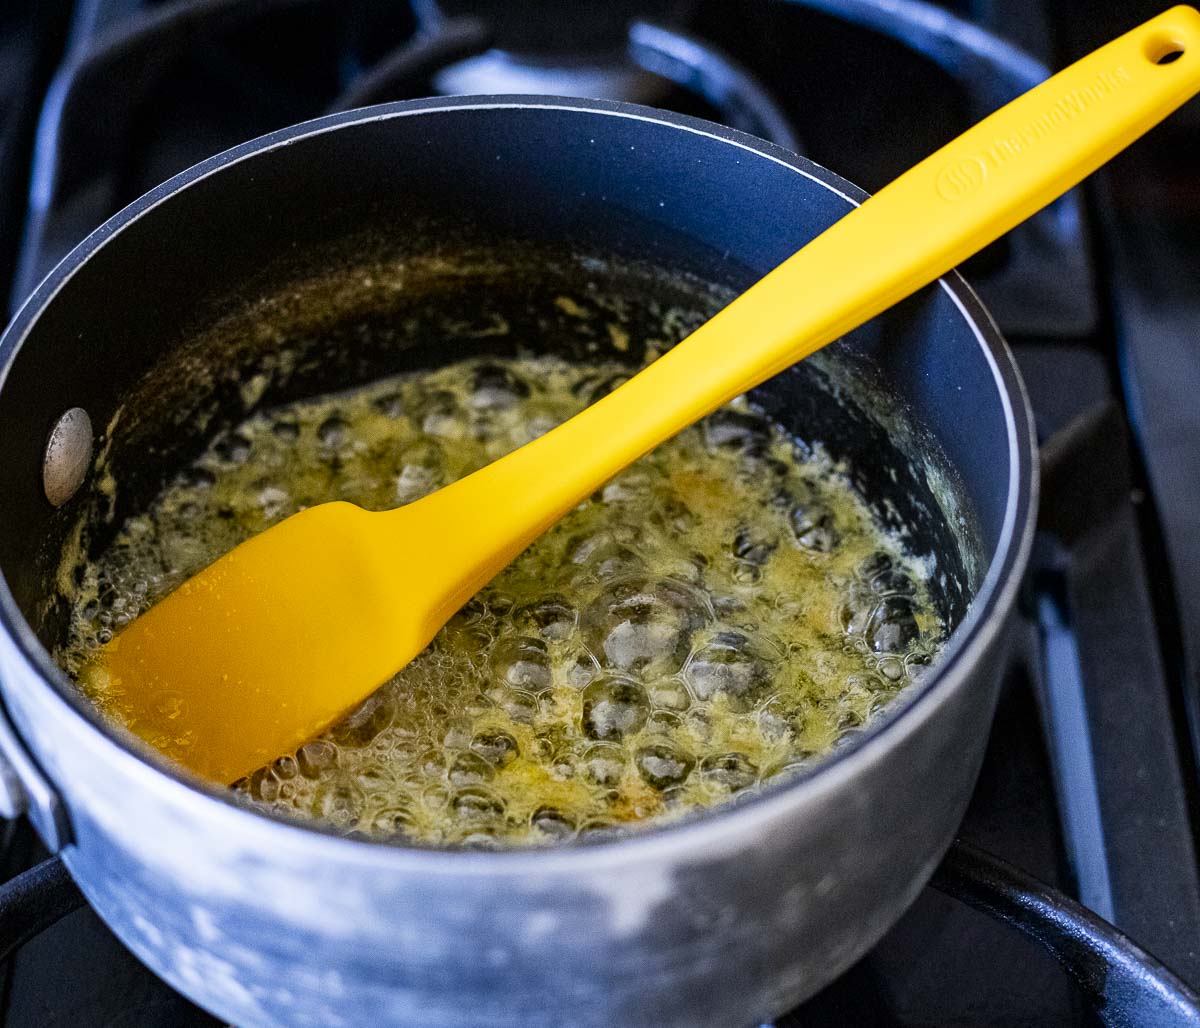 butter, garlic and lemon zest in a saucepan